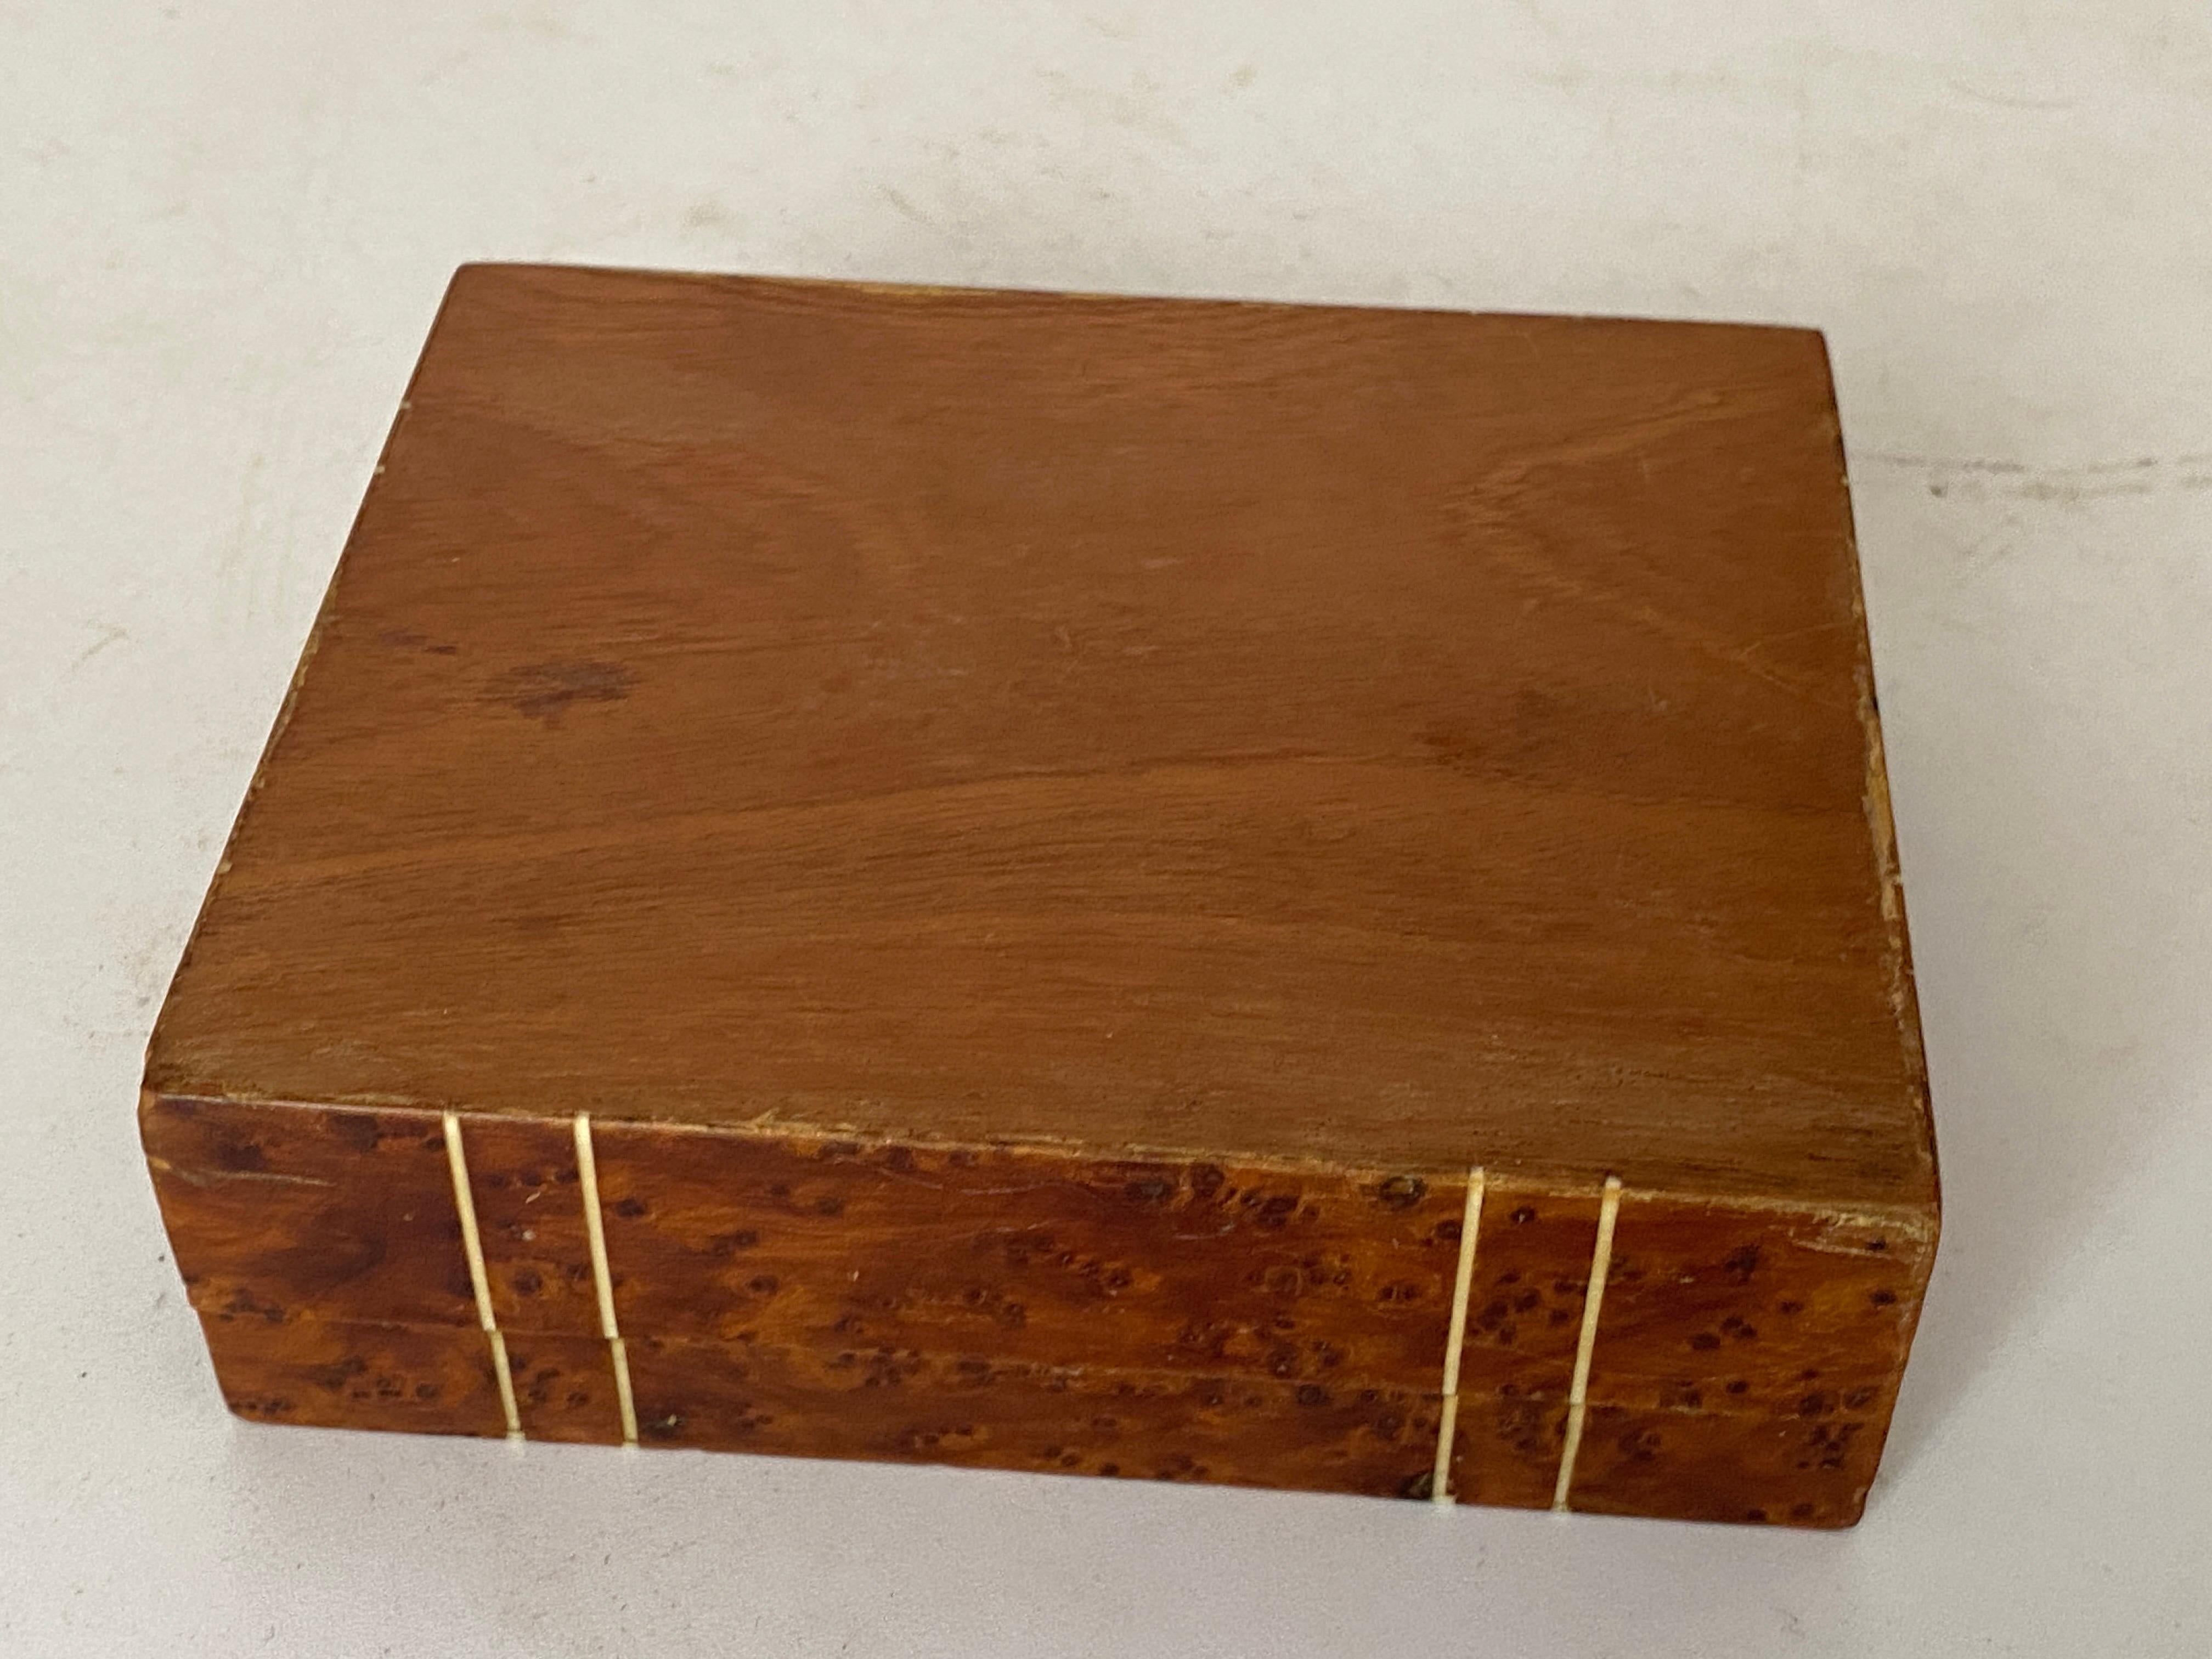 Diese Box ist aus Wurzelholz. Es wurde in den 1870er Jahren in Frankreich hergestellt. Die Farbe ist braun, und es ist in einem guten Zustand. 
Braune Farbe.